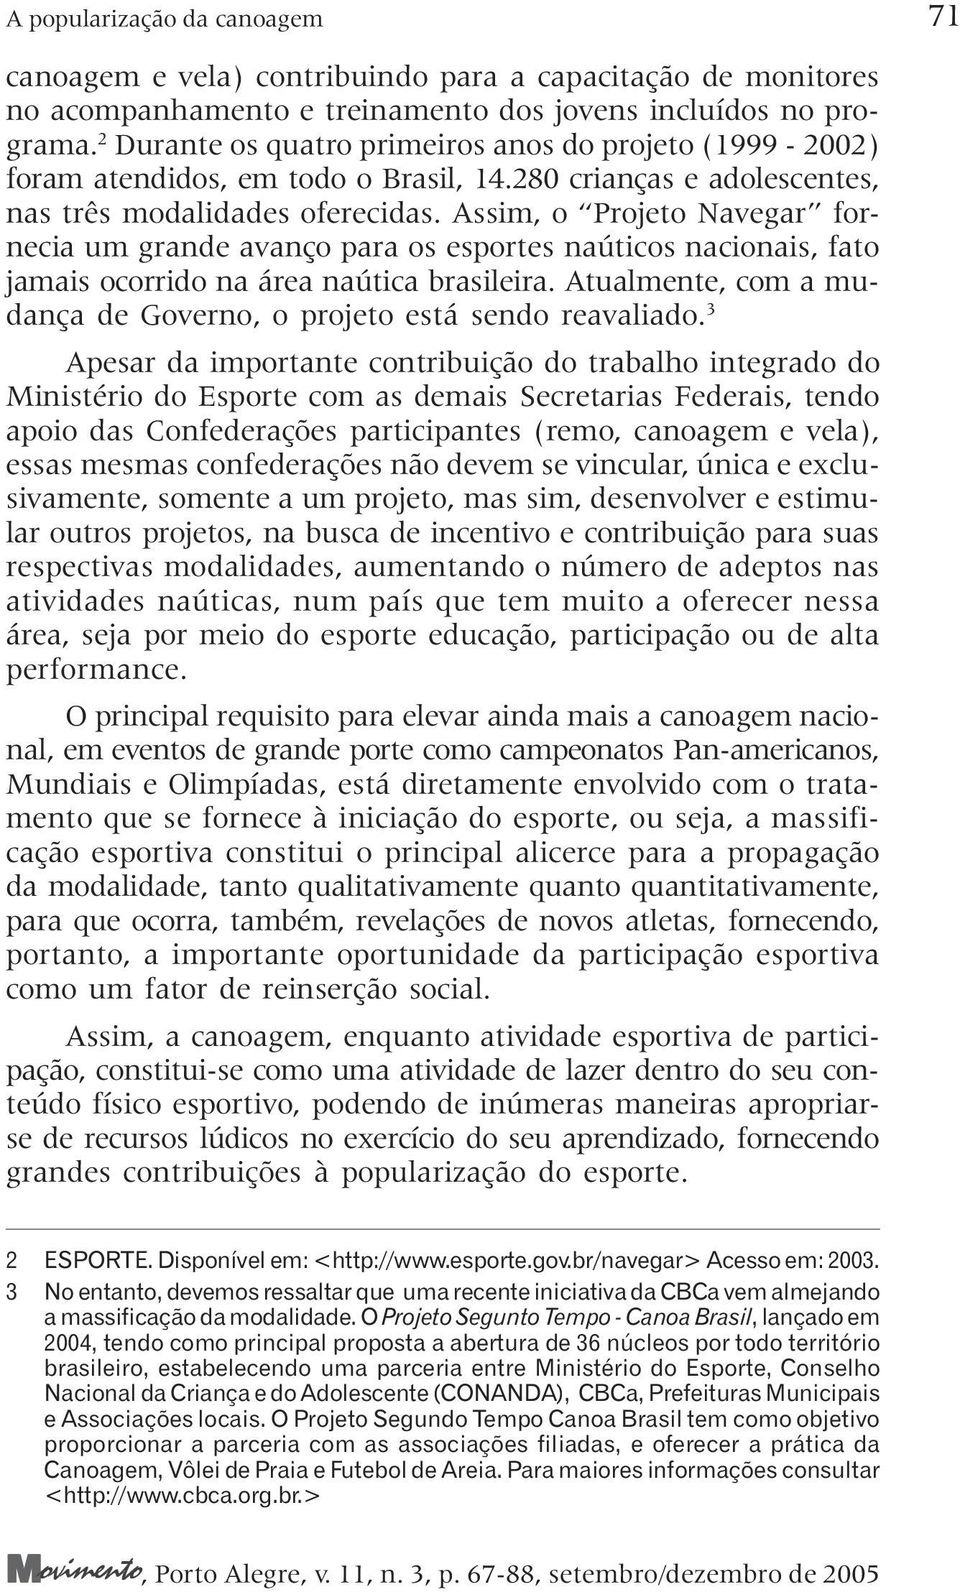 Assim, o Projeto Navegar fornecia um grande avanço para os esportes naúticos nacionais, fato jamais ocorrido na área naútica brasileira.